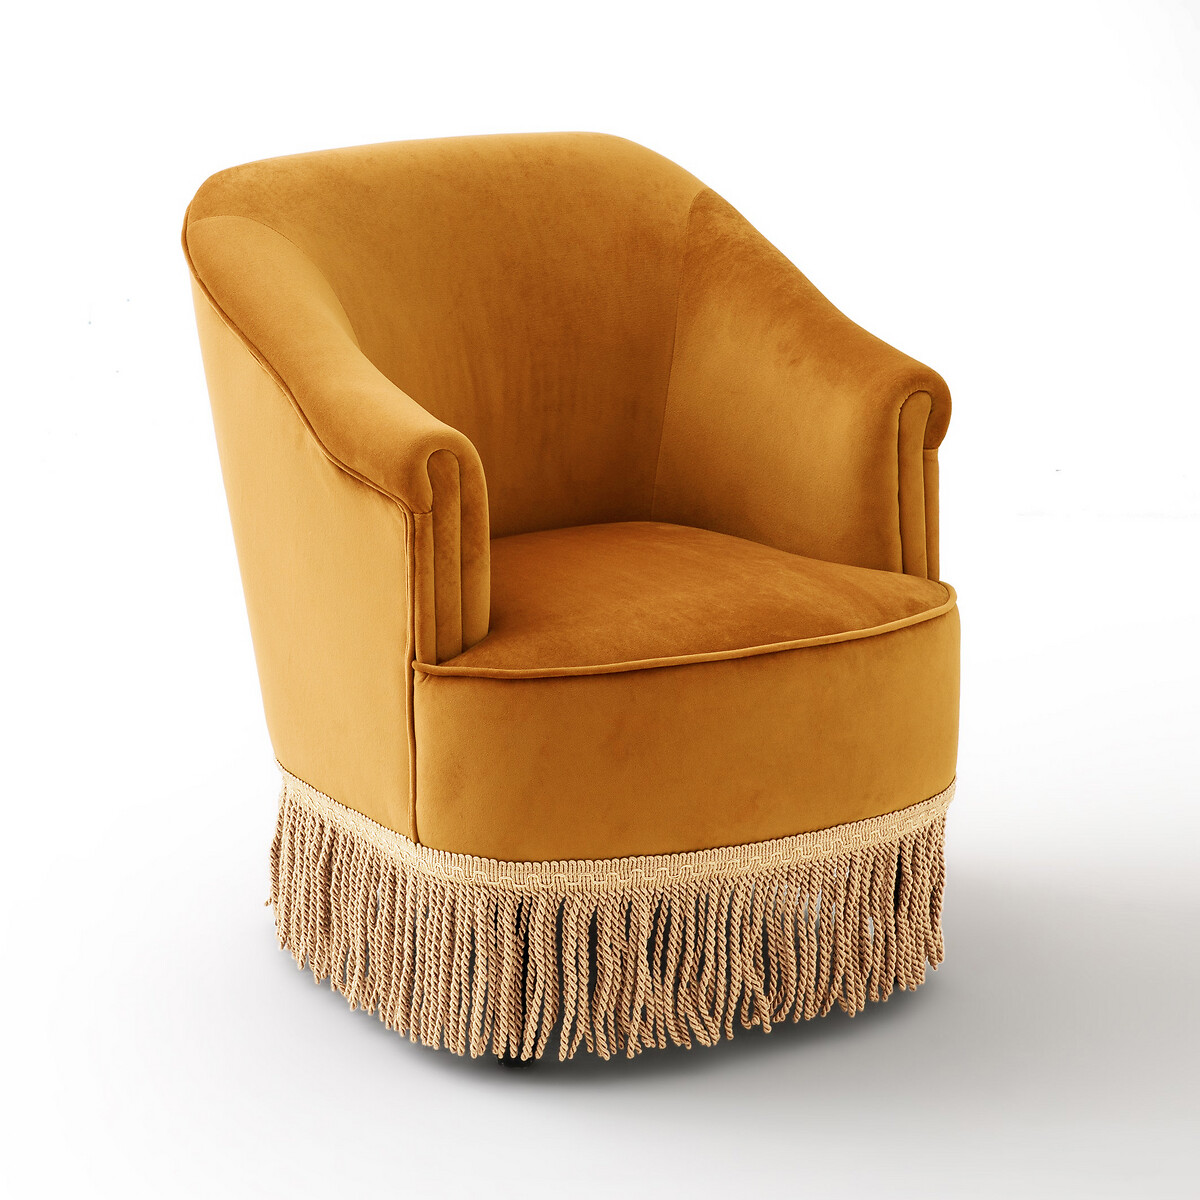 Кресло LaRedoute Низкое и широкое в винтажном стиле из велюра с бахромой RAMONA 1-мест. желтый, размер 1-мест. - фото 1